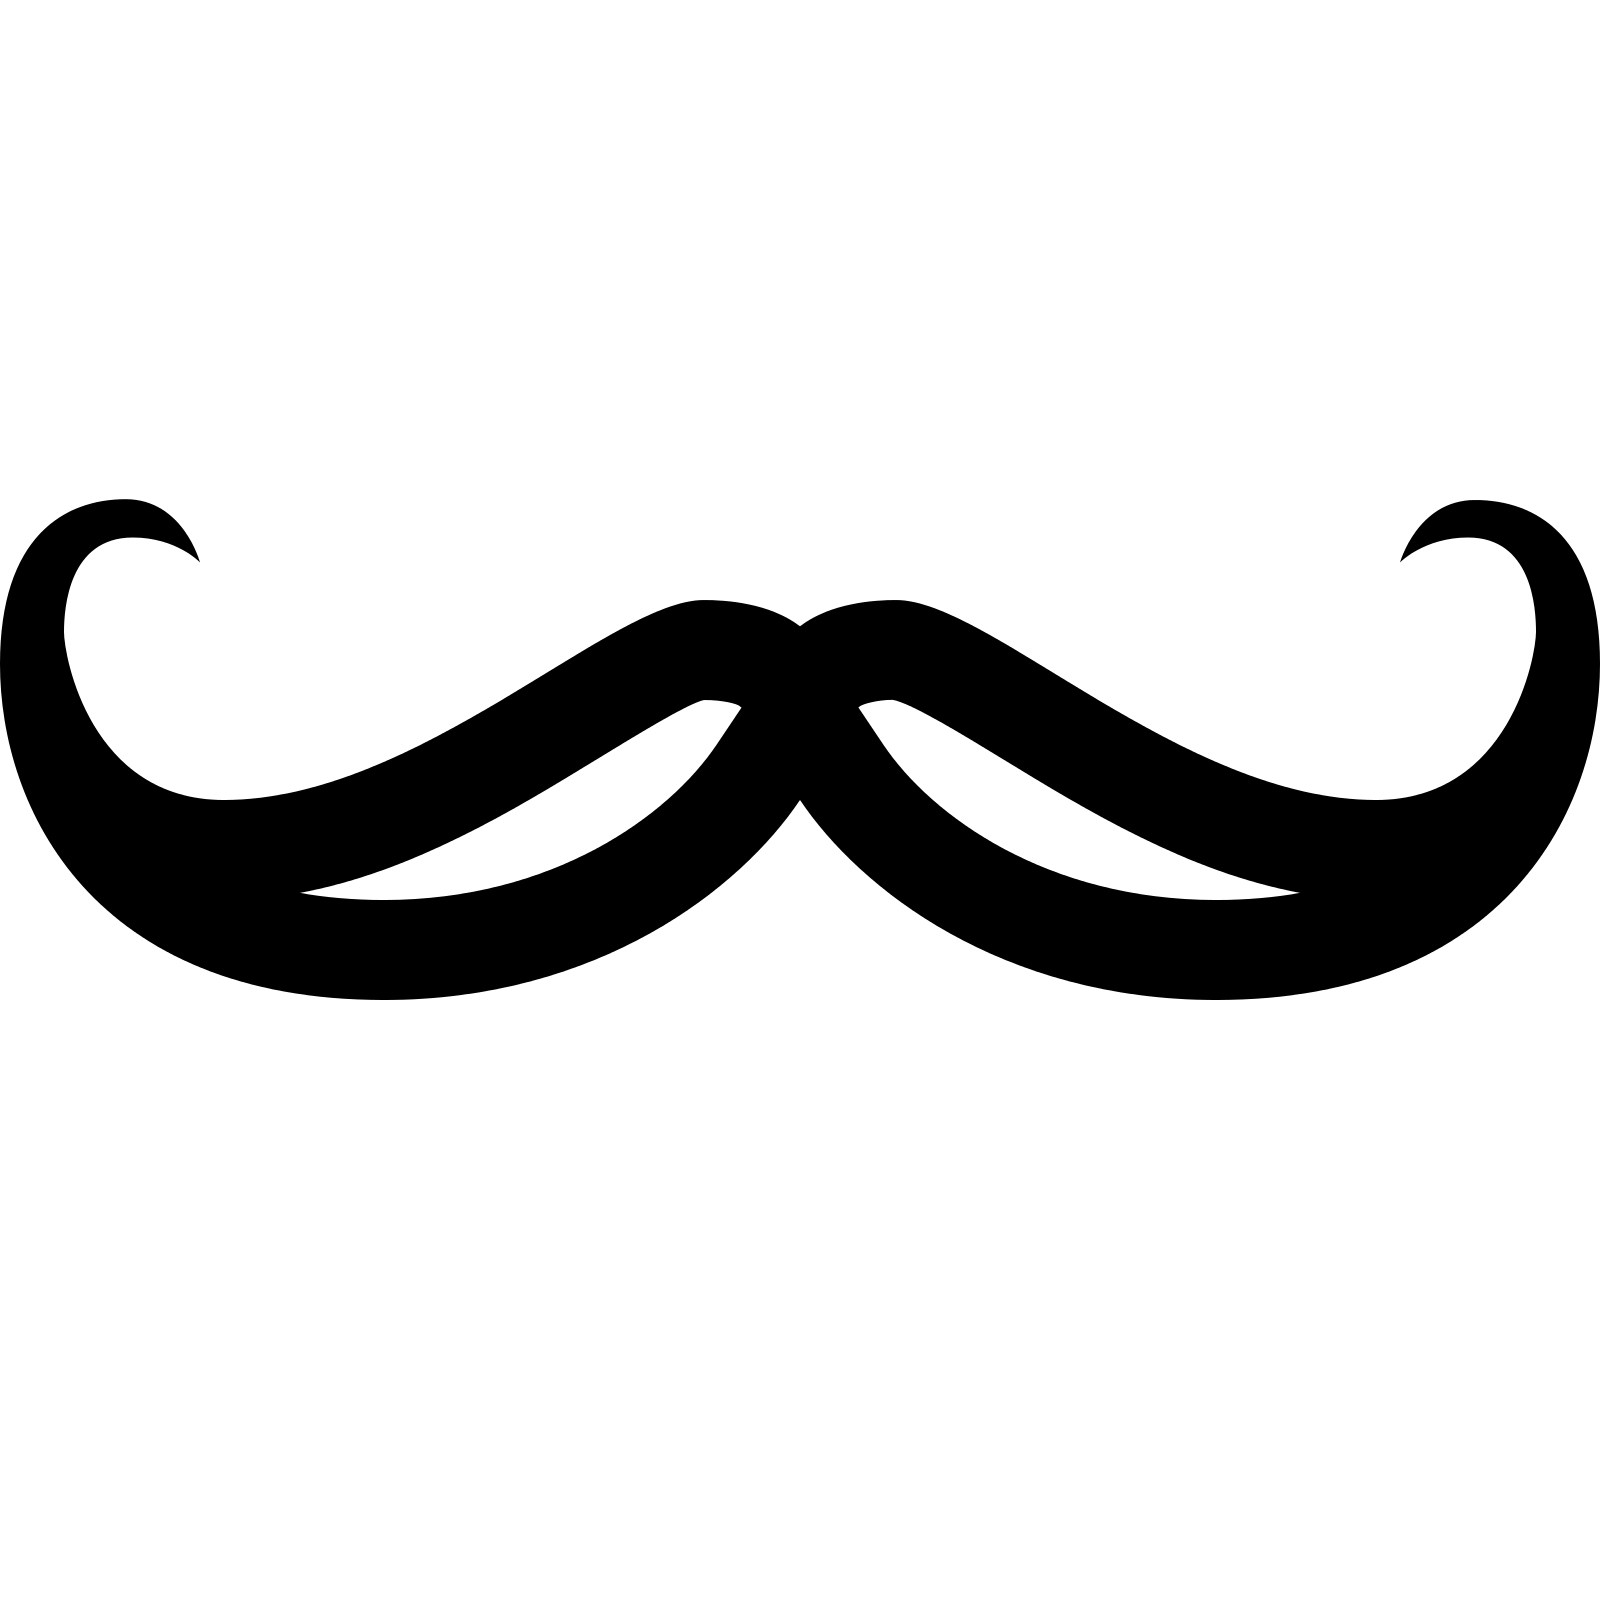 moustache clipart transparent background